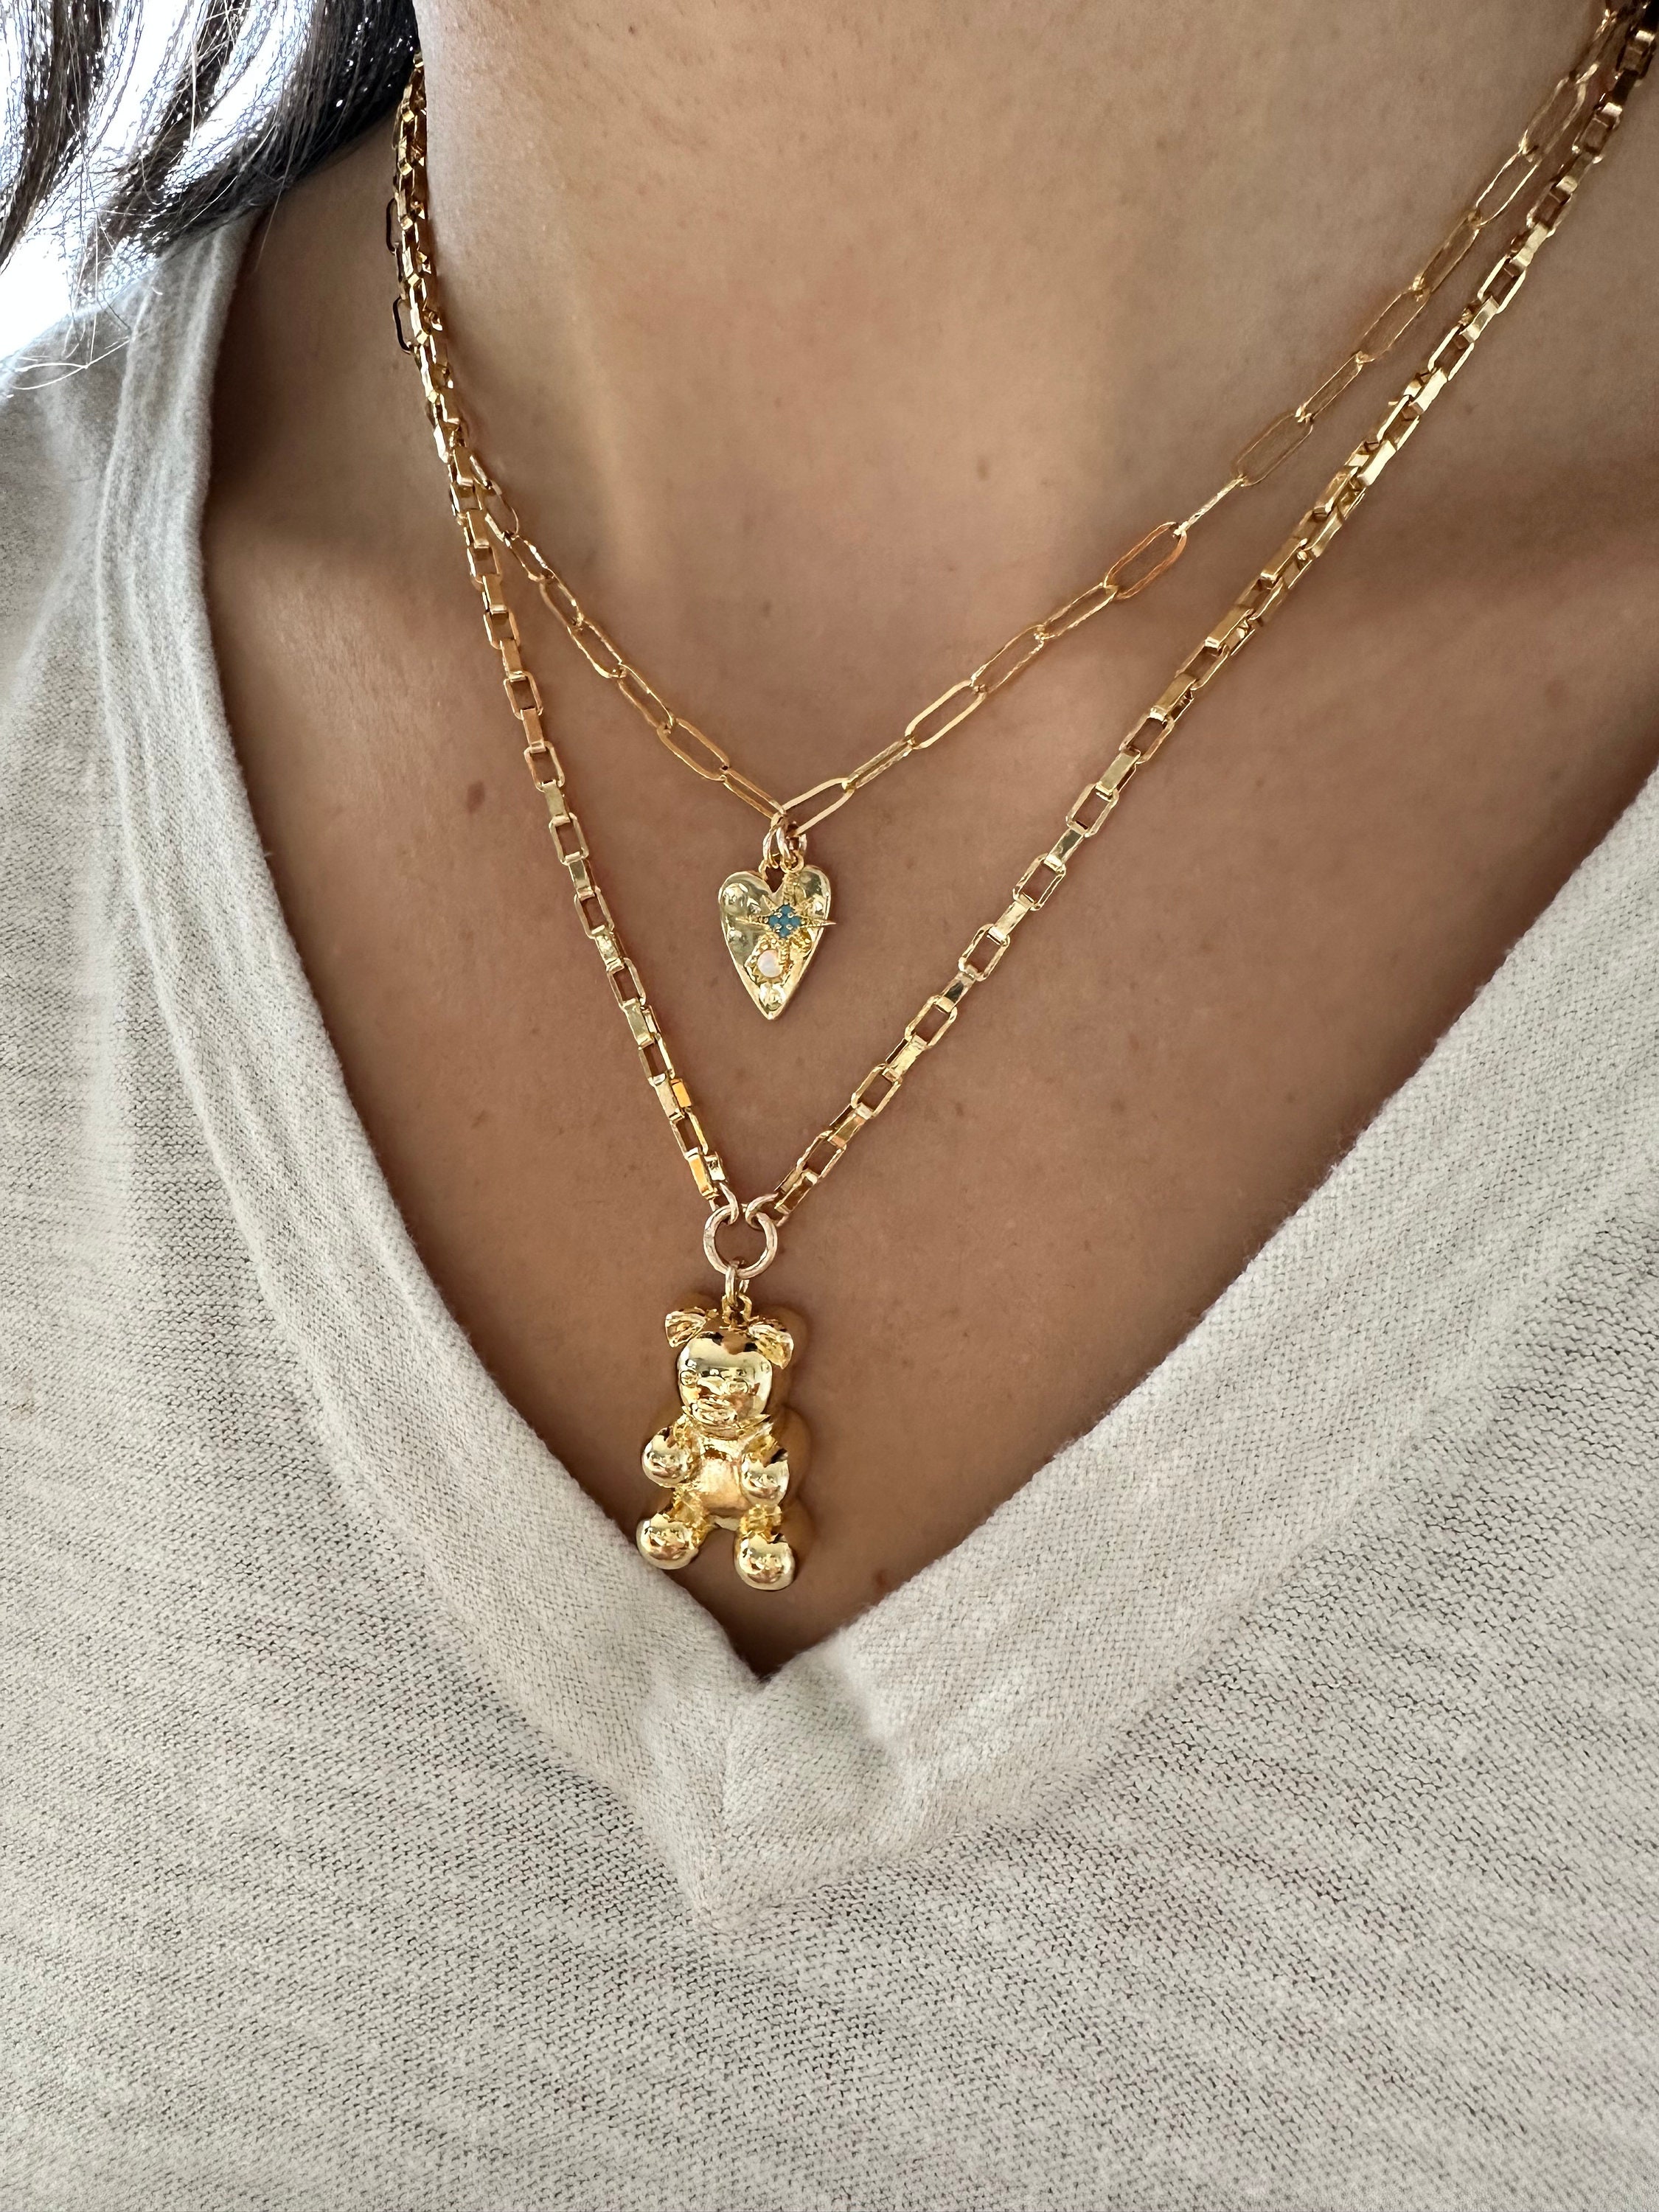 Minimalistic Design Gold Teddy Bear Necklace, Teddy